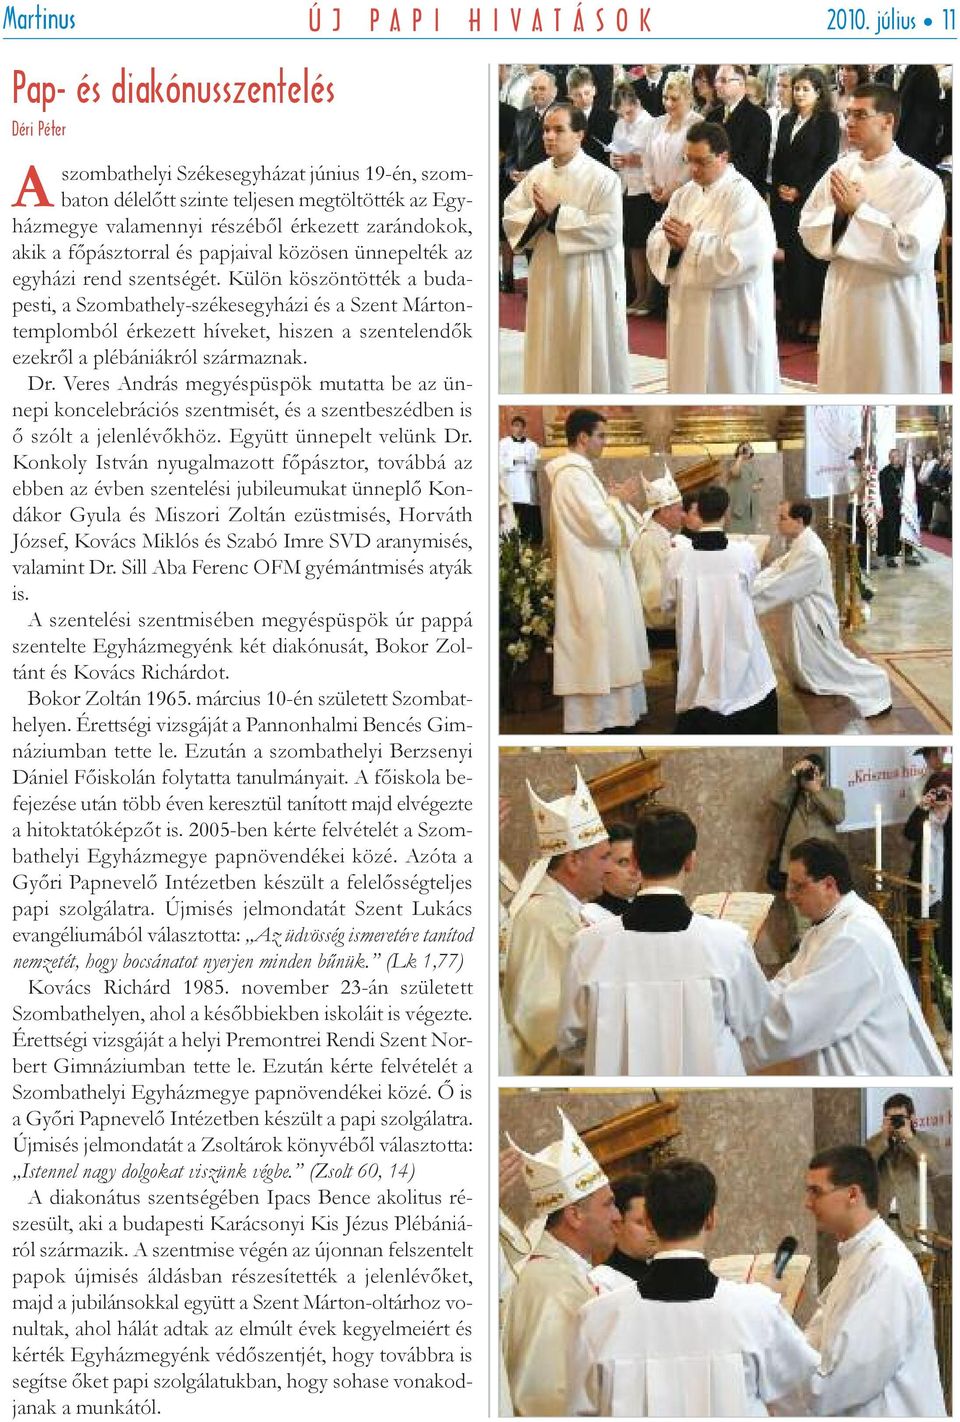 a főpásztorral és papjaival közösen ünnepelték az egyházi rend szentségét.